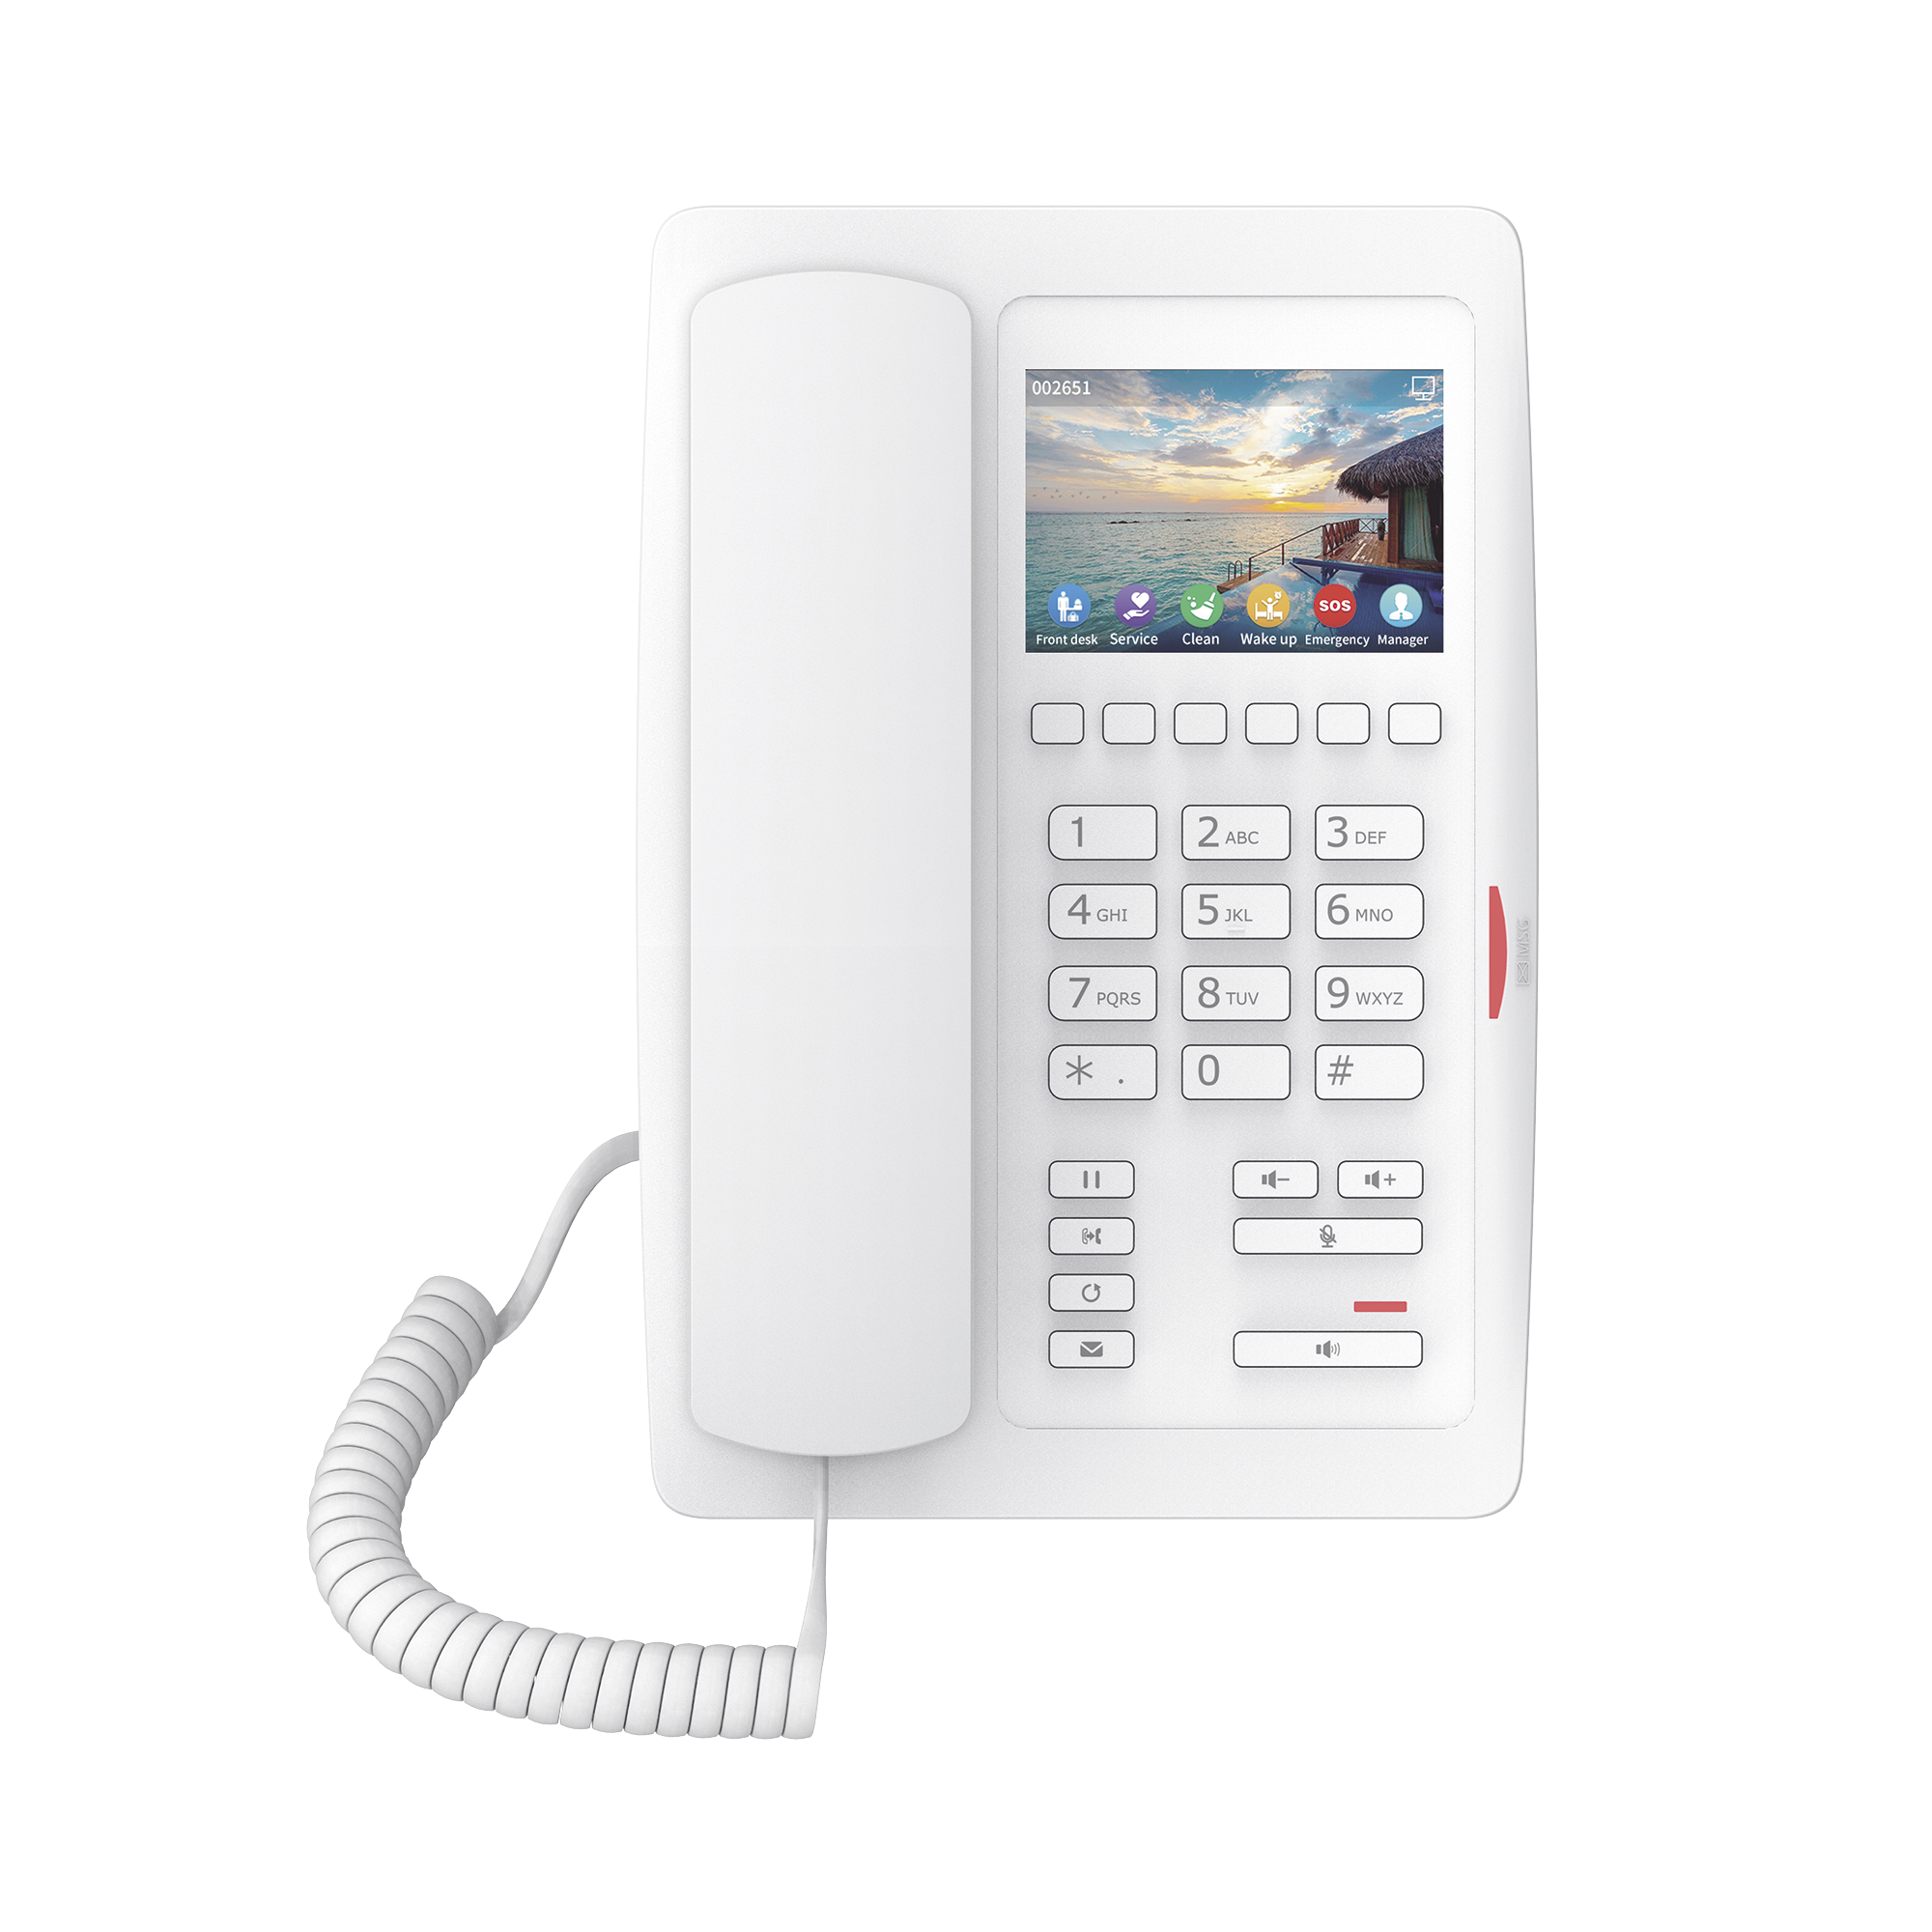 (H5W Color Blanco)Teléfono IP WiFi para Hotelería, profesional de gama alta con pantalla LCD de 3.5 pulgadas a color, 6 teclas programables para servicio rápido (Hotline) PoE